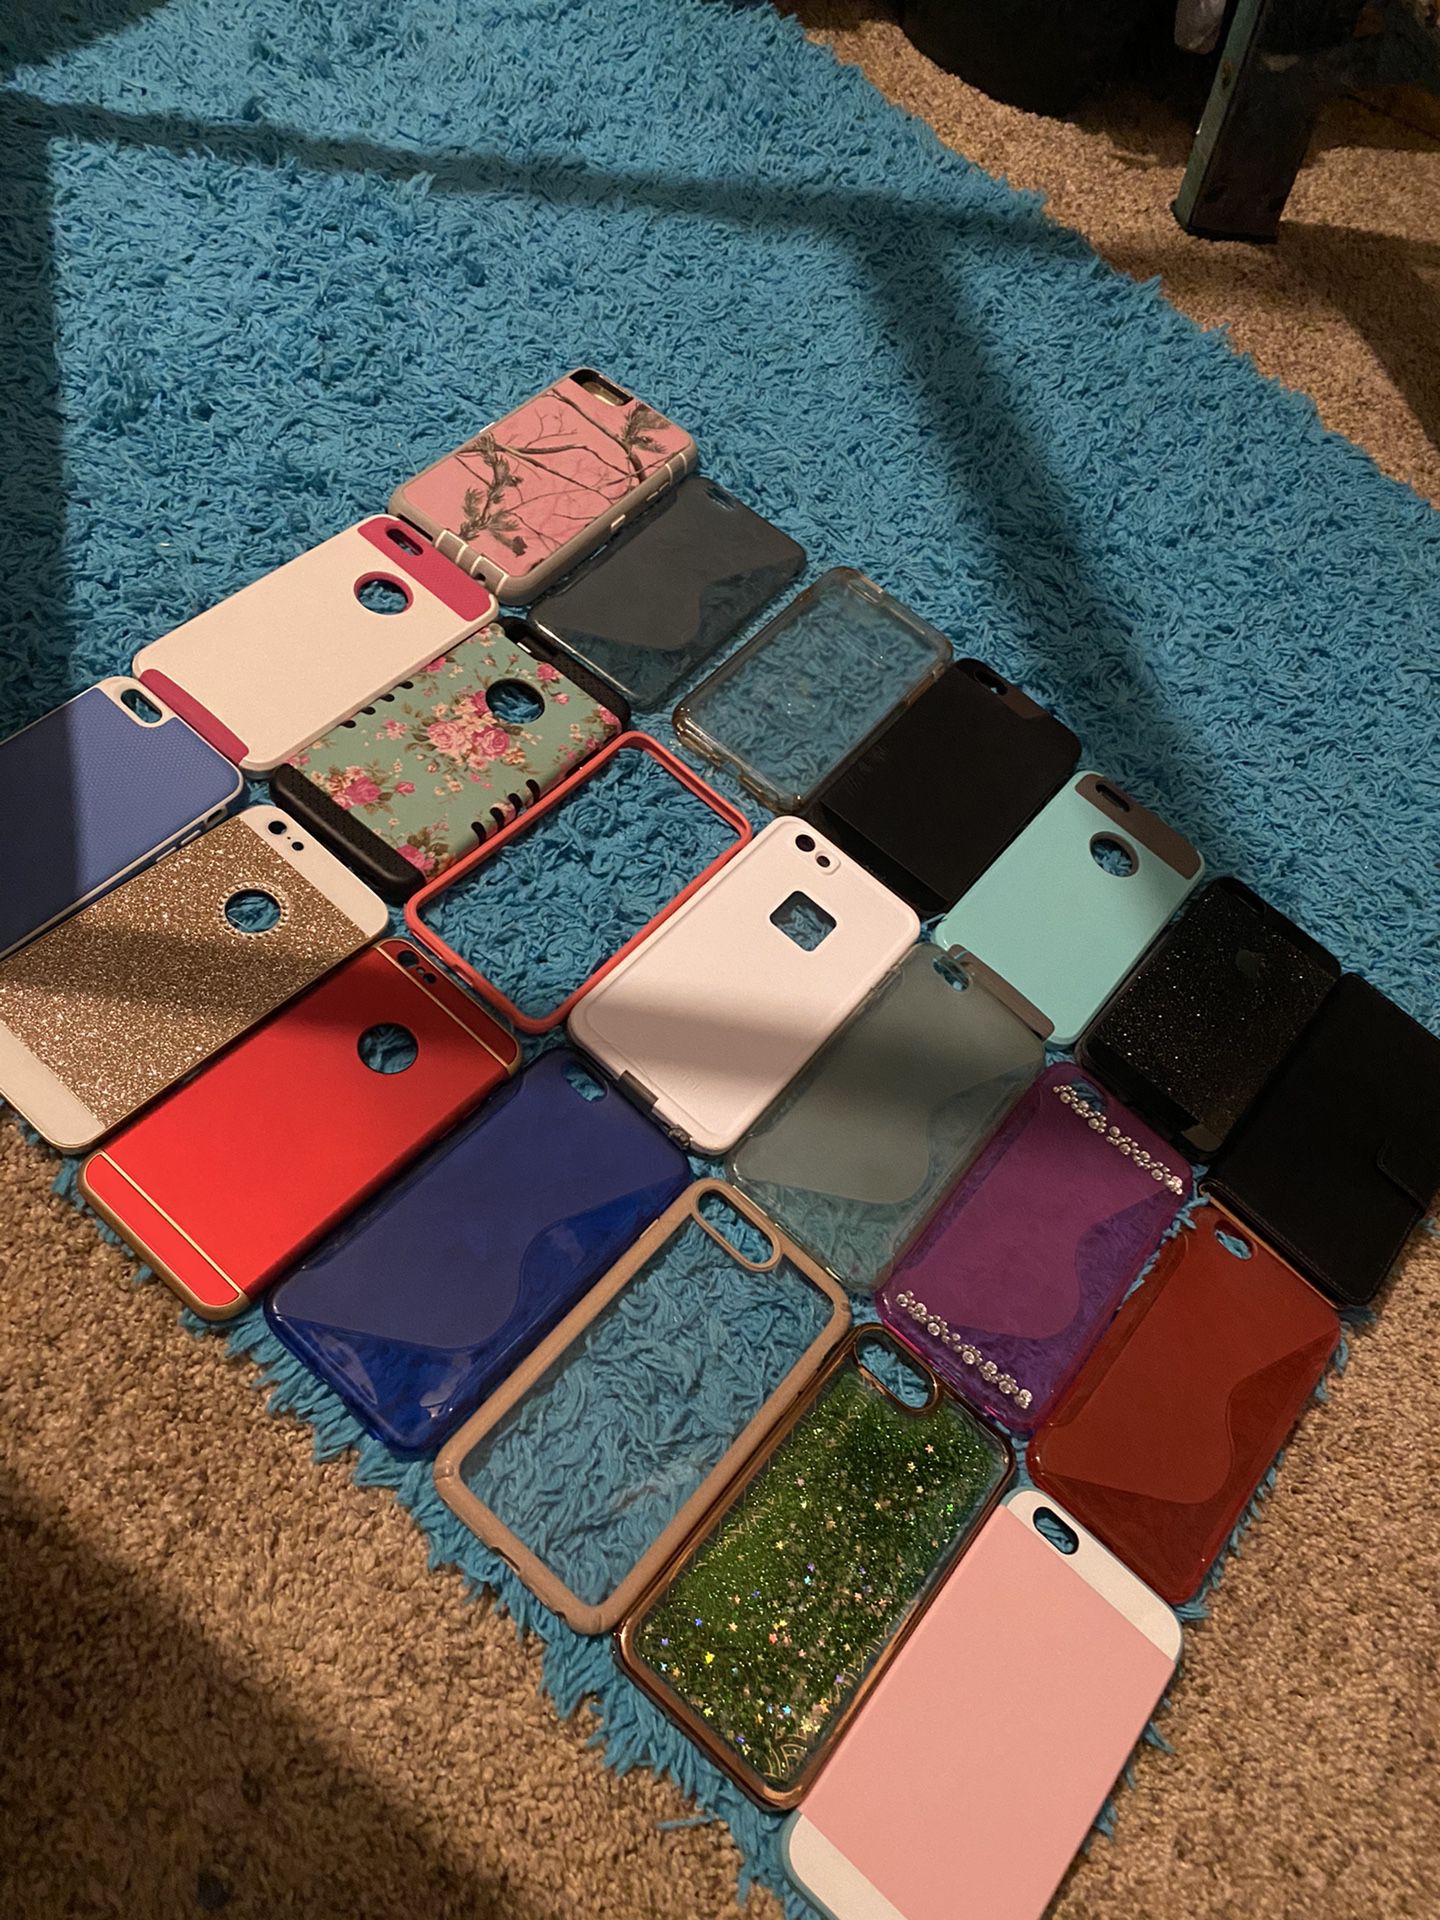 IPhone cases